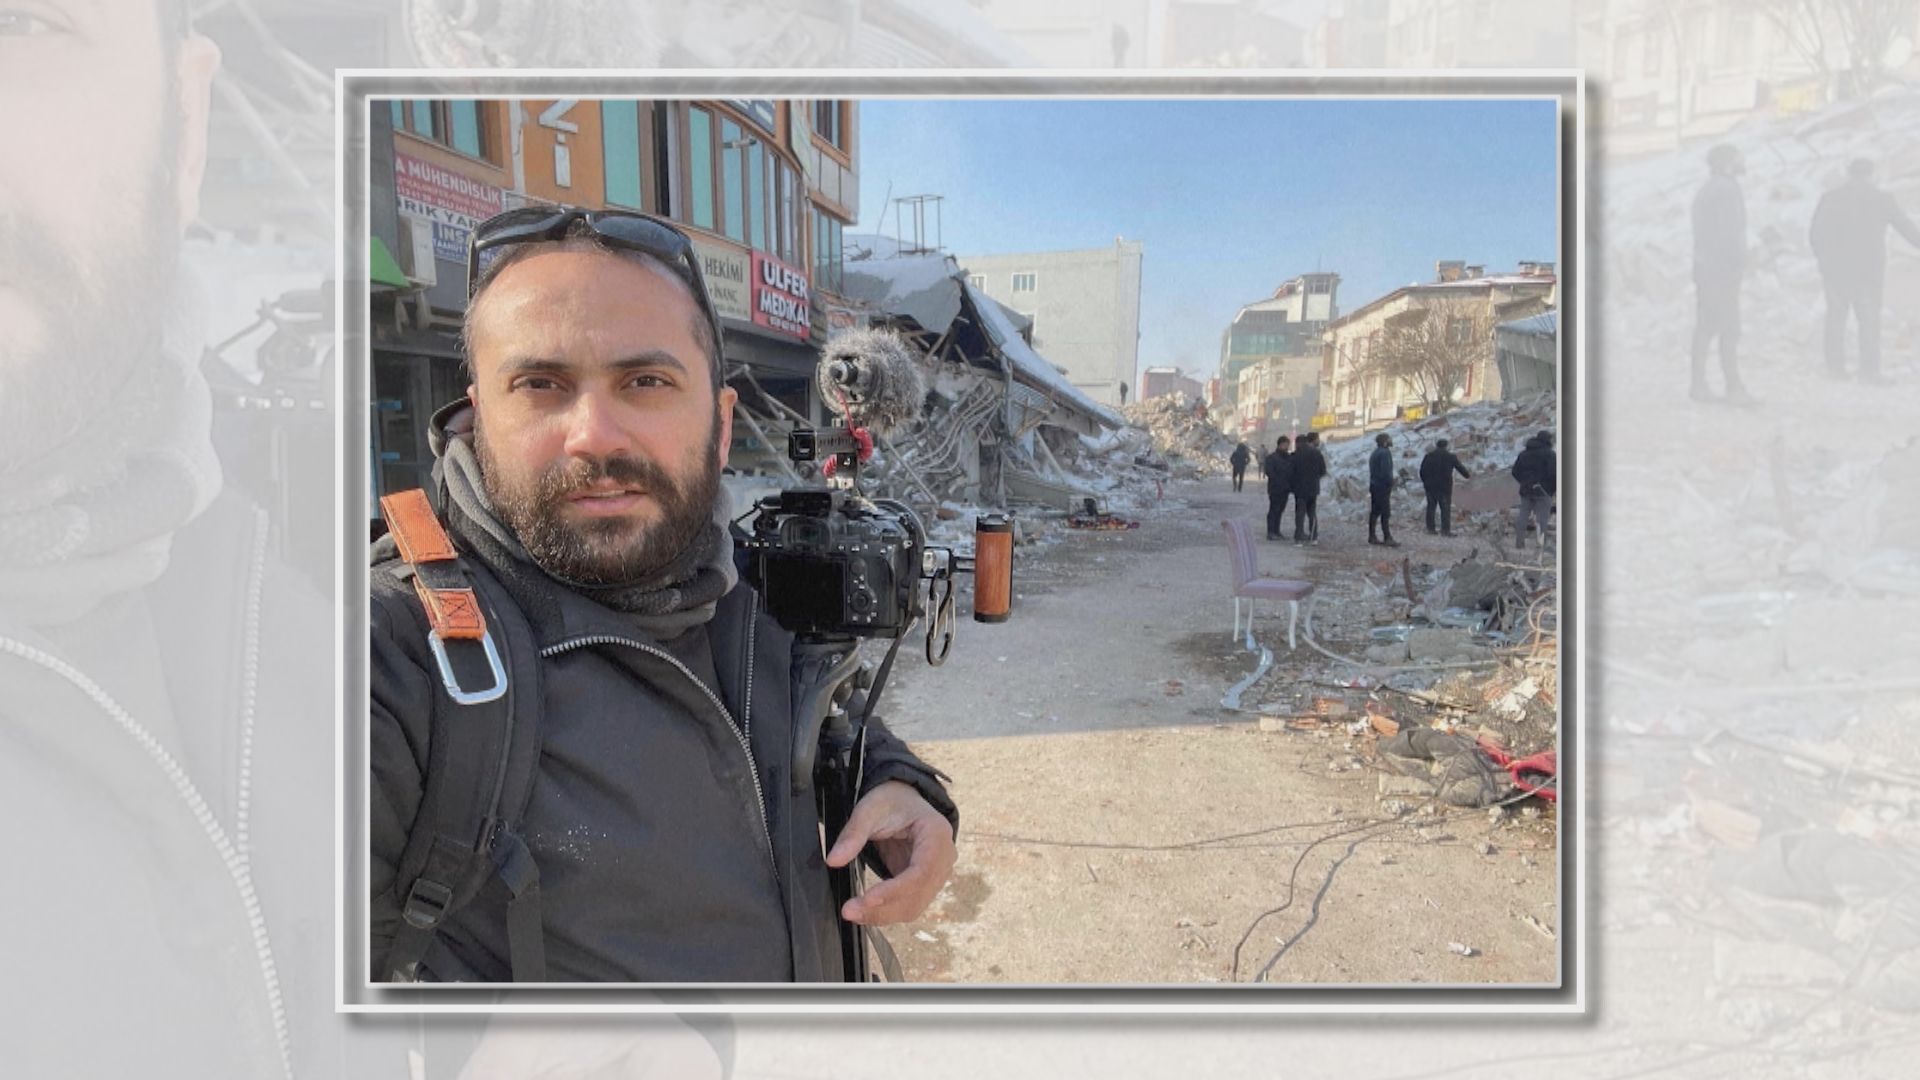 路透社記者黎巴嫩南部被炮彈炸死 以巴最新衝突至少11名記者殉職